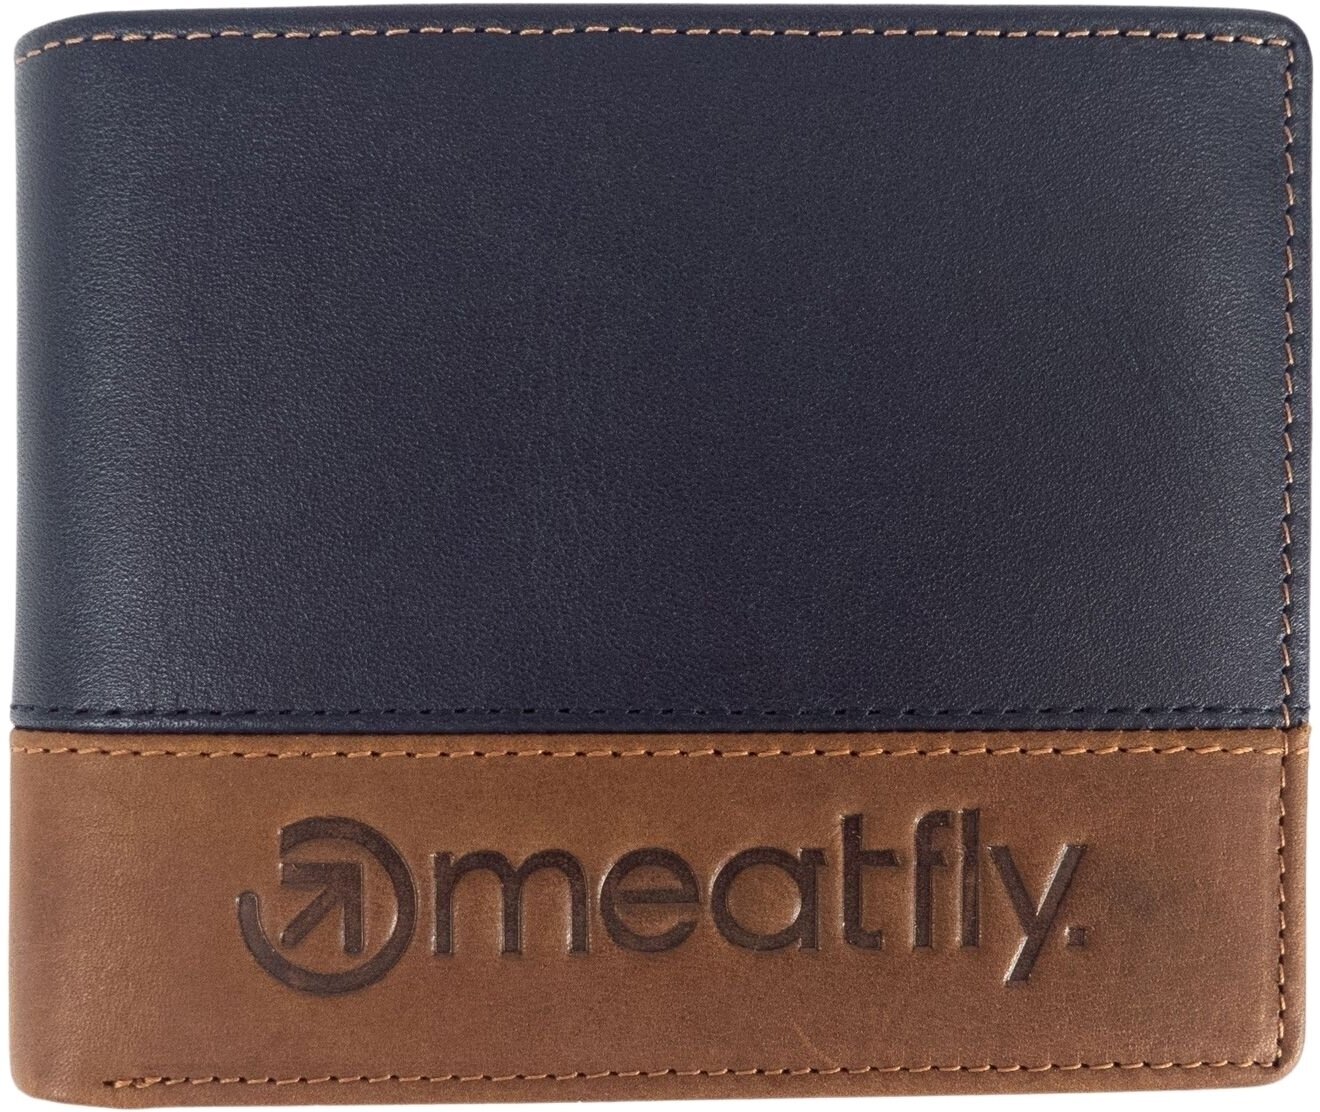 Wallet, Crossbody Bag Meatfly Eddie Premium Leather Wallet Navy/Brown Wallet